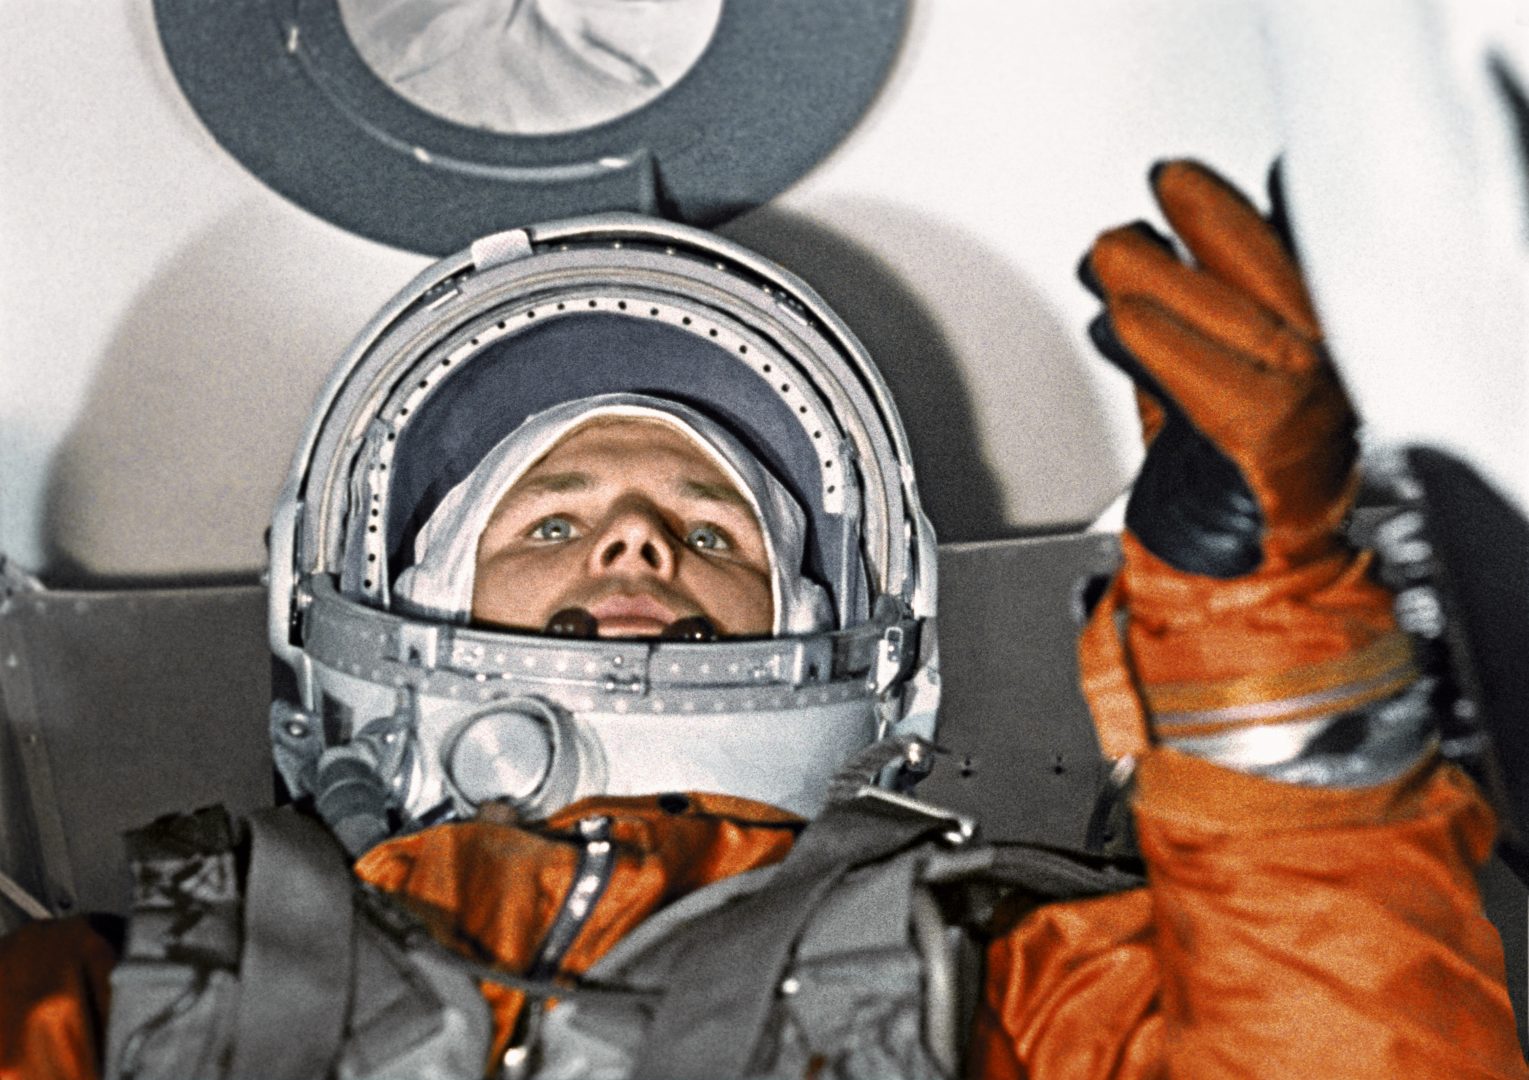 Первый человек пробыл в космосе 1 час 48 минут, что сделало его известным на весь мир